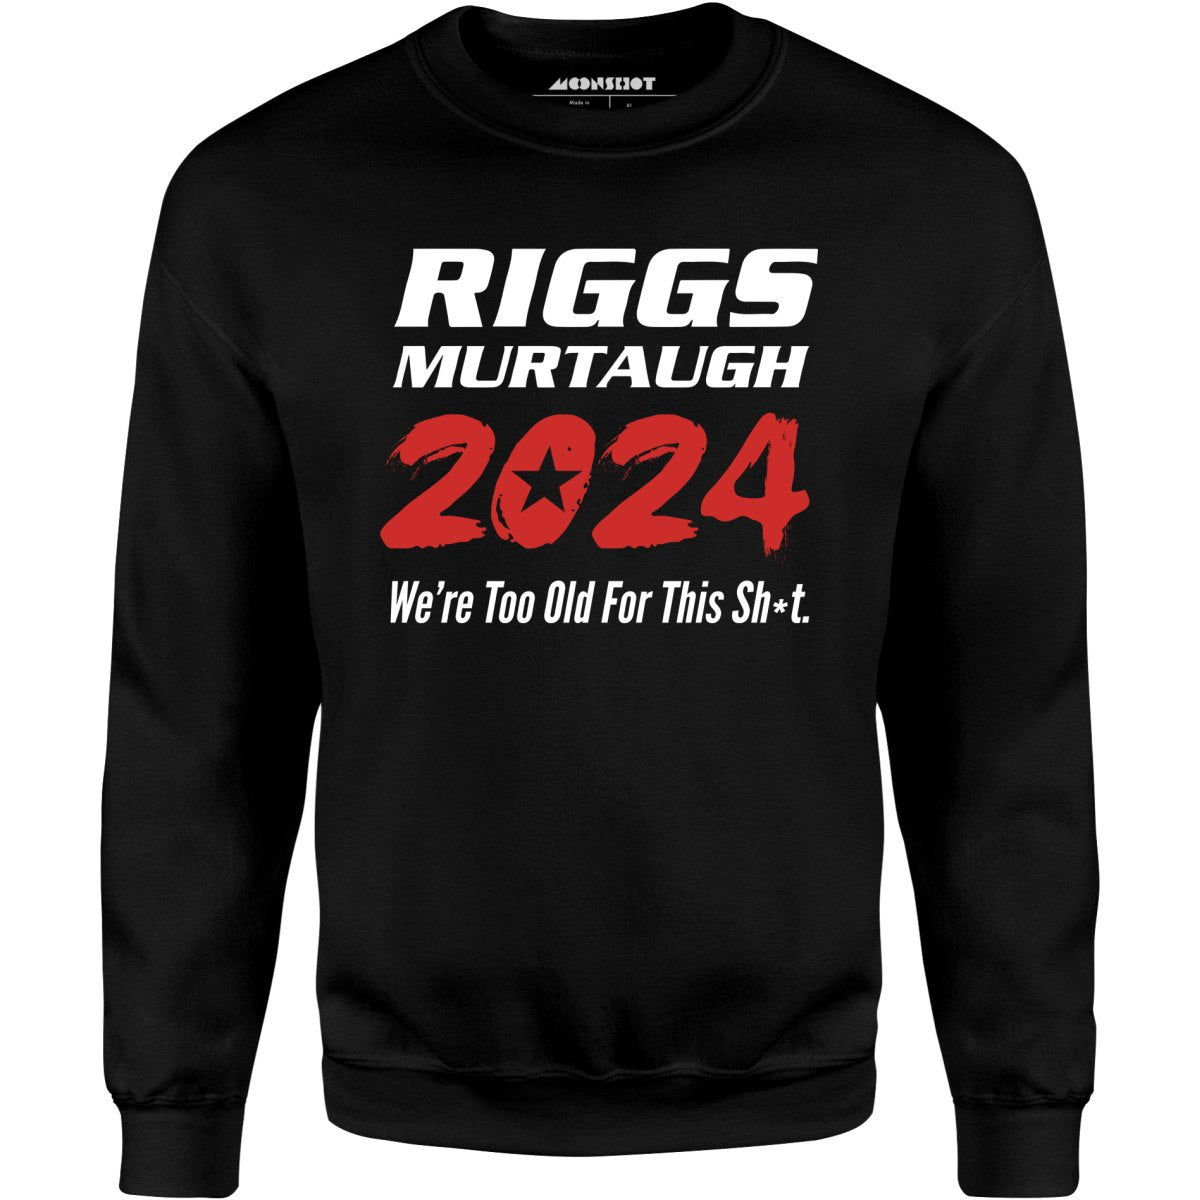 Riggs Murtaugh 2024 - Unisex Sweatshirt